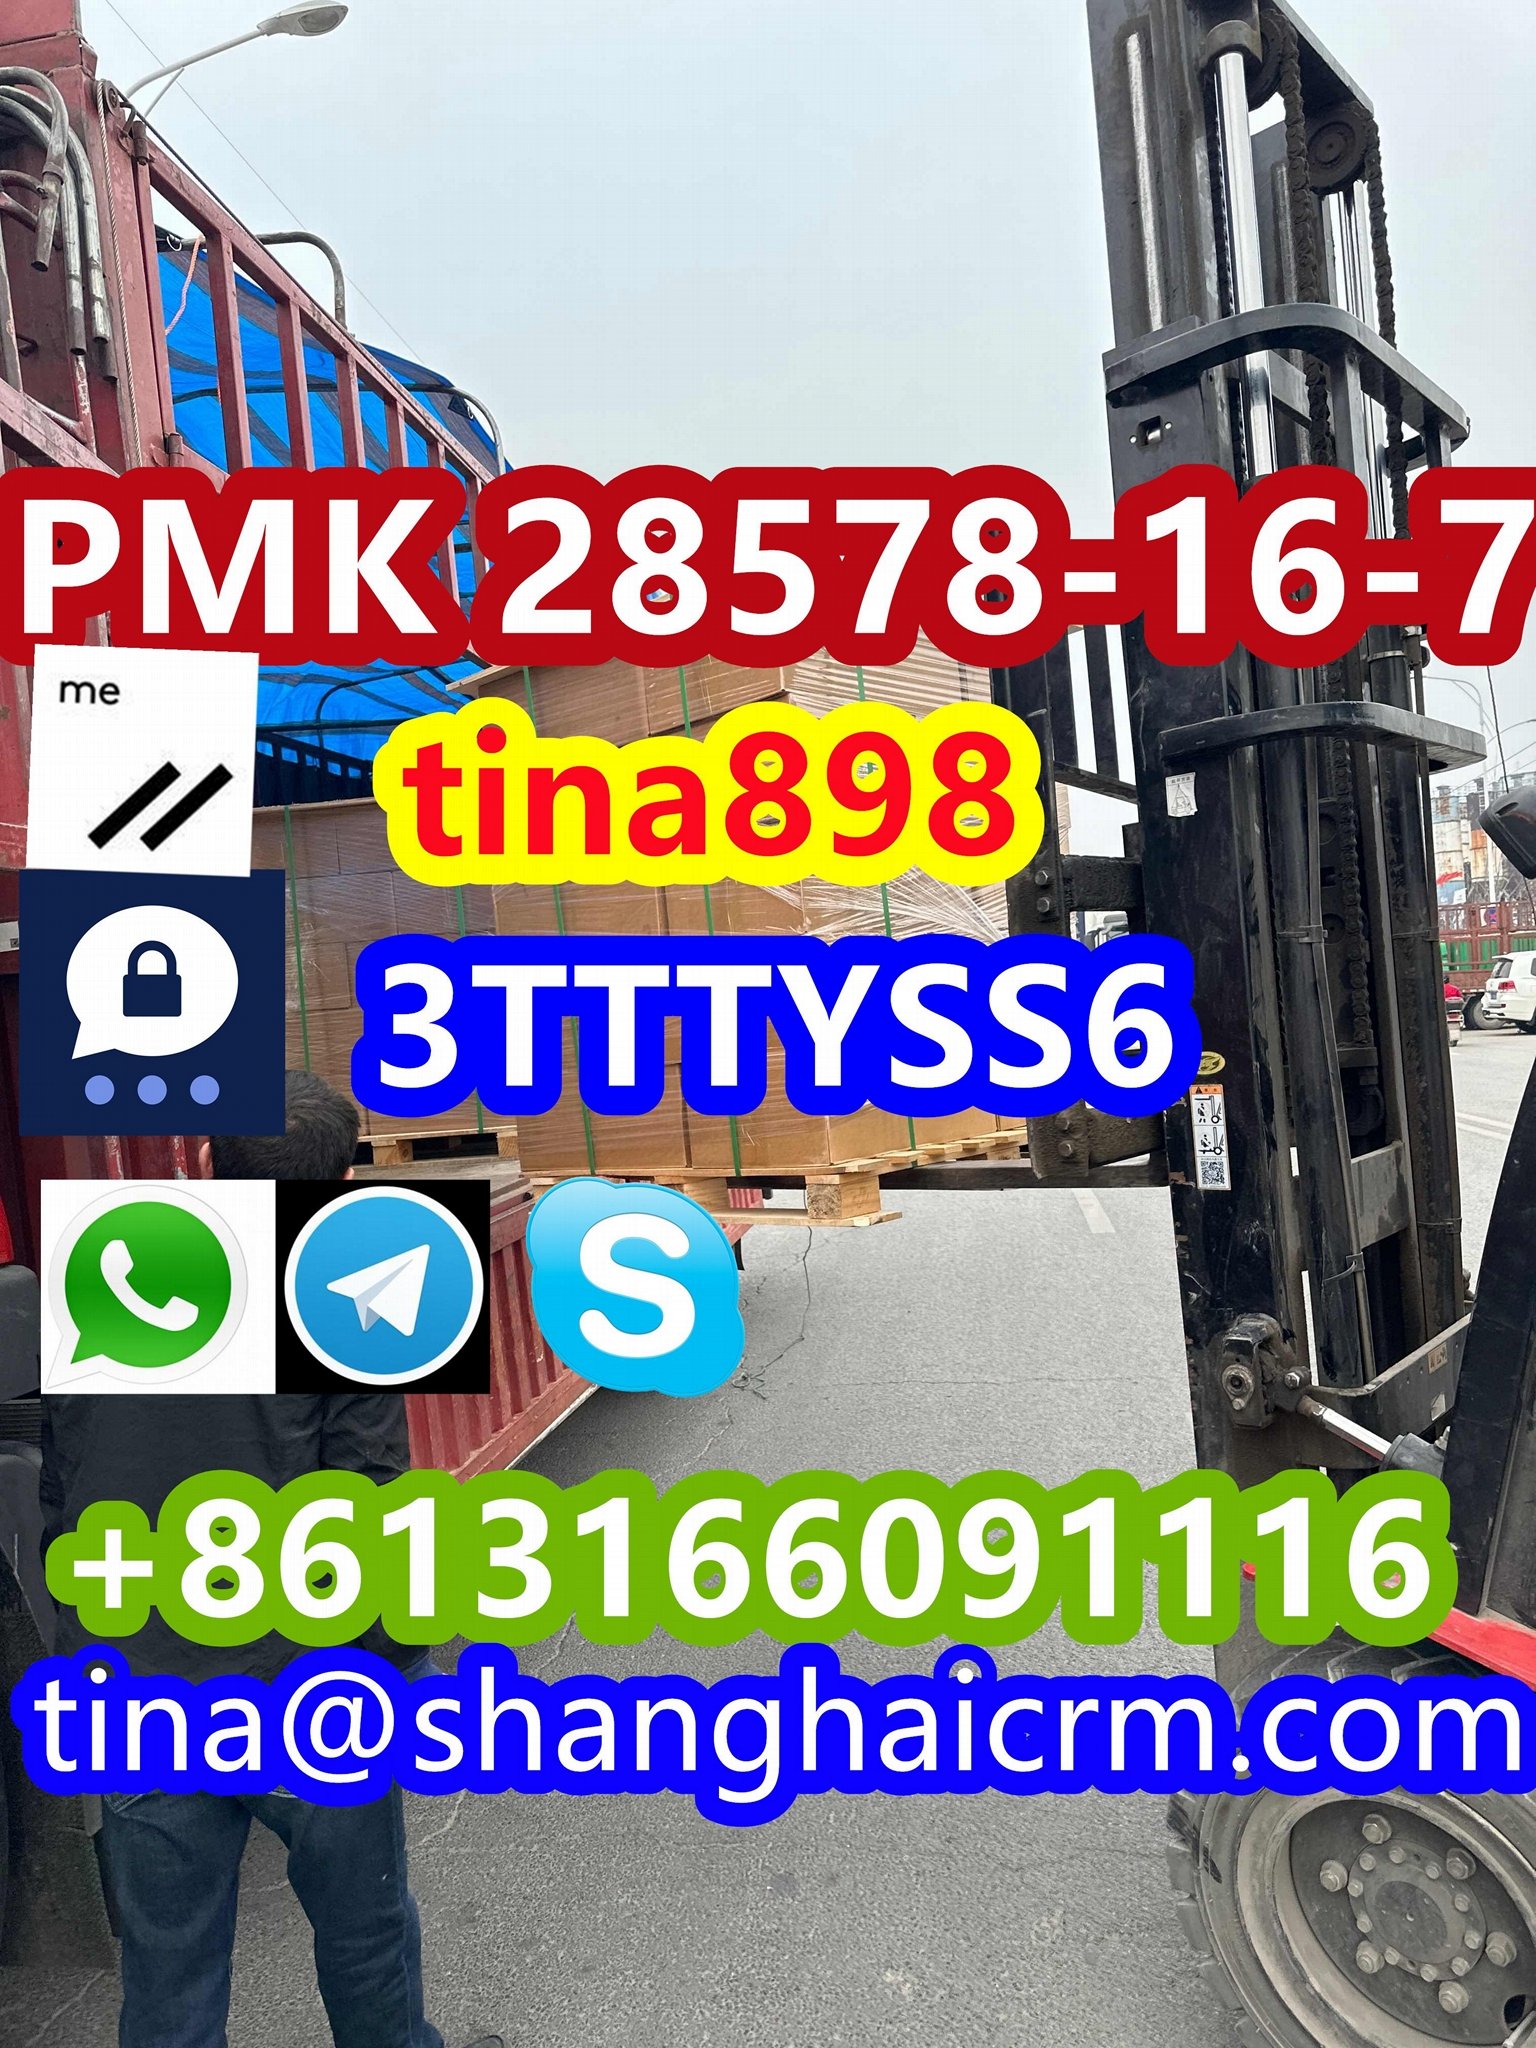 Factory High Quality PMK Powder PMK Oil CAS 28578-16-7